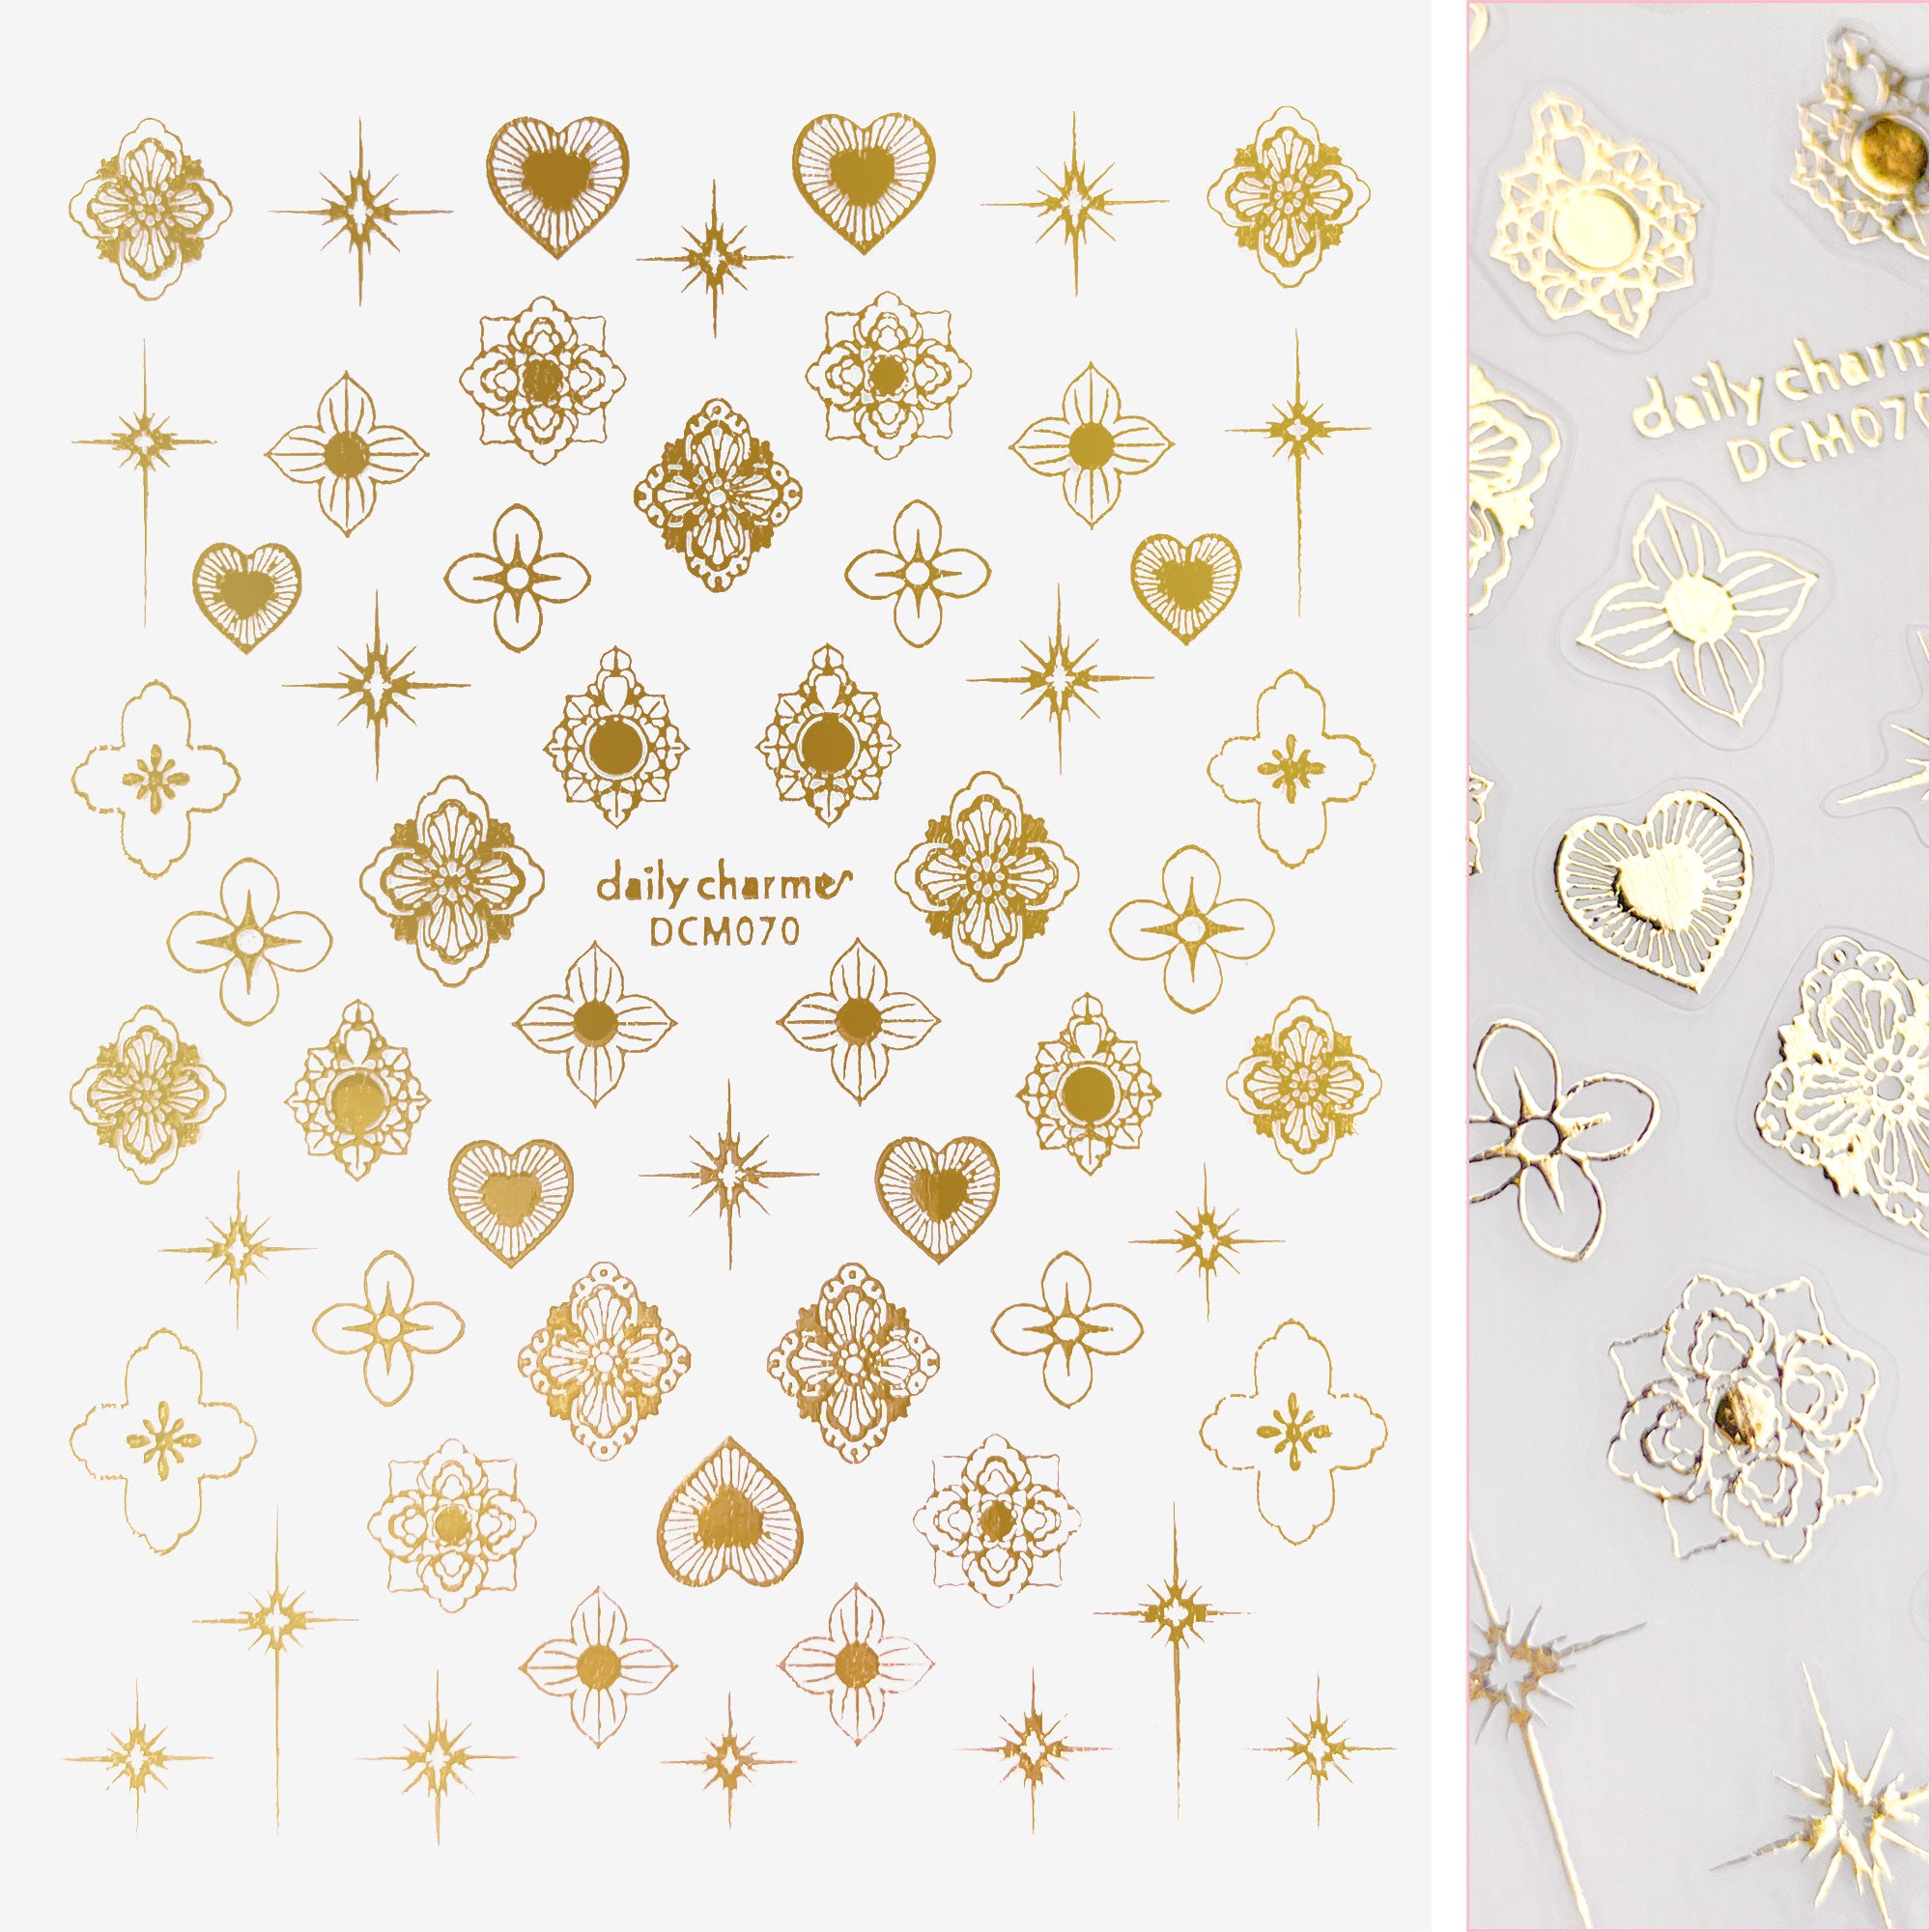 Chic Nail Art Sticker / Henna Motif / Metallic Gold Heart Flower Star Sparkles Gold Foil Trend